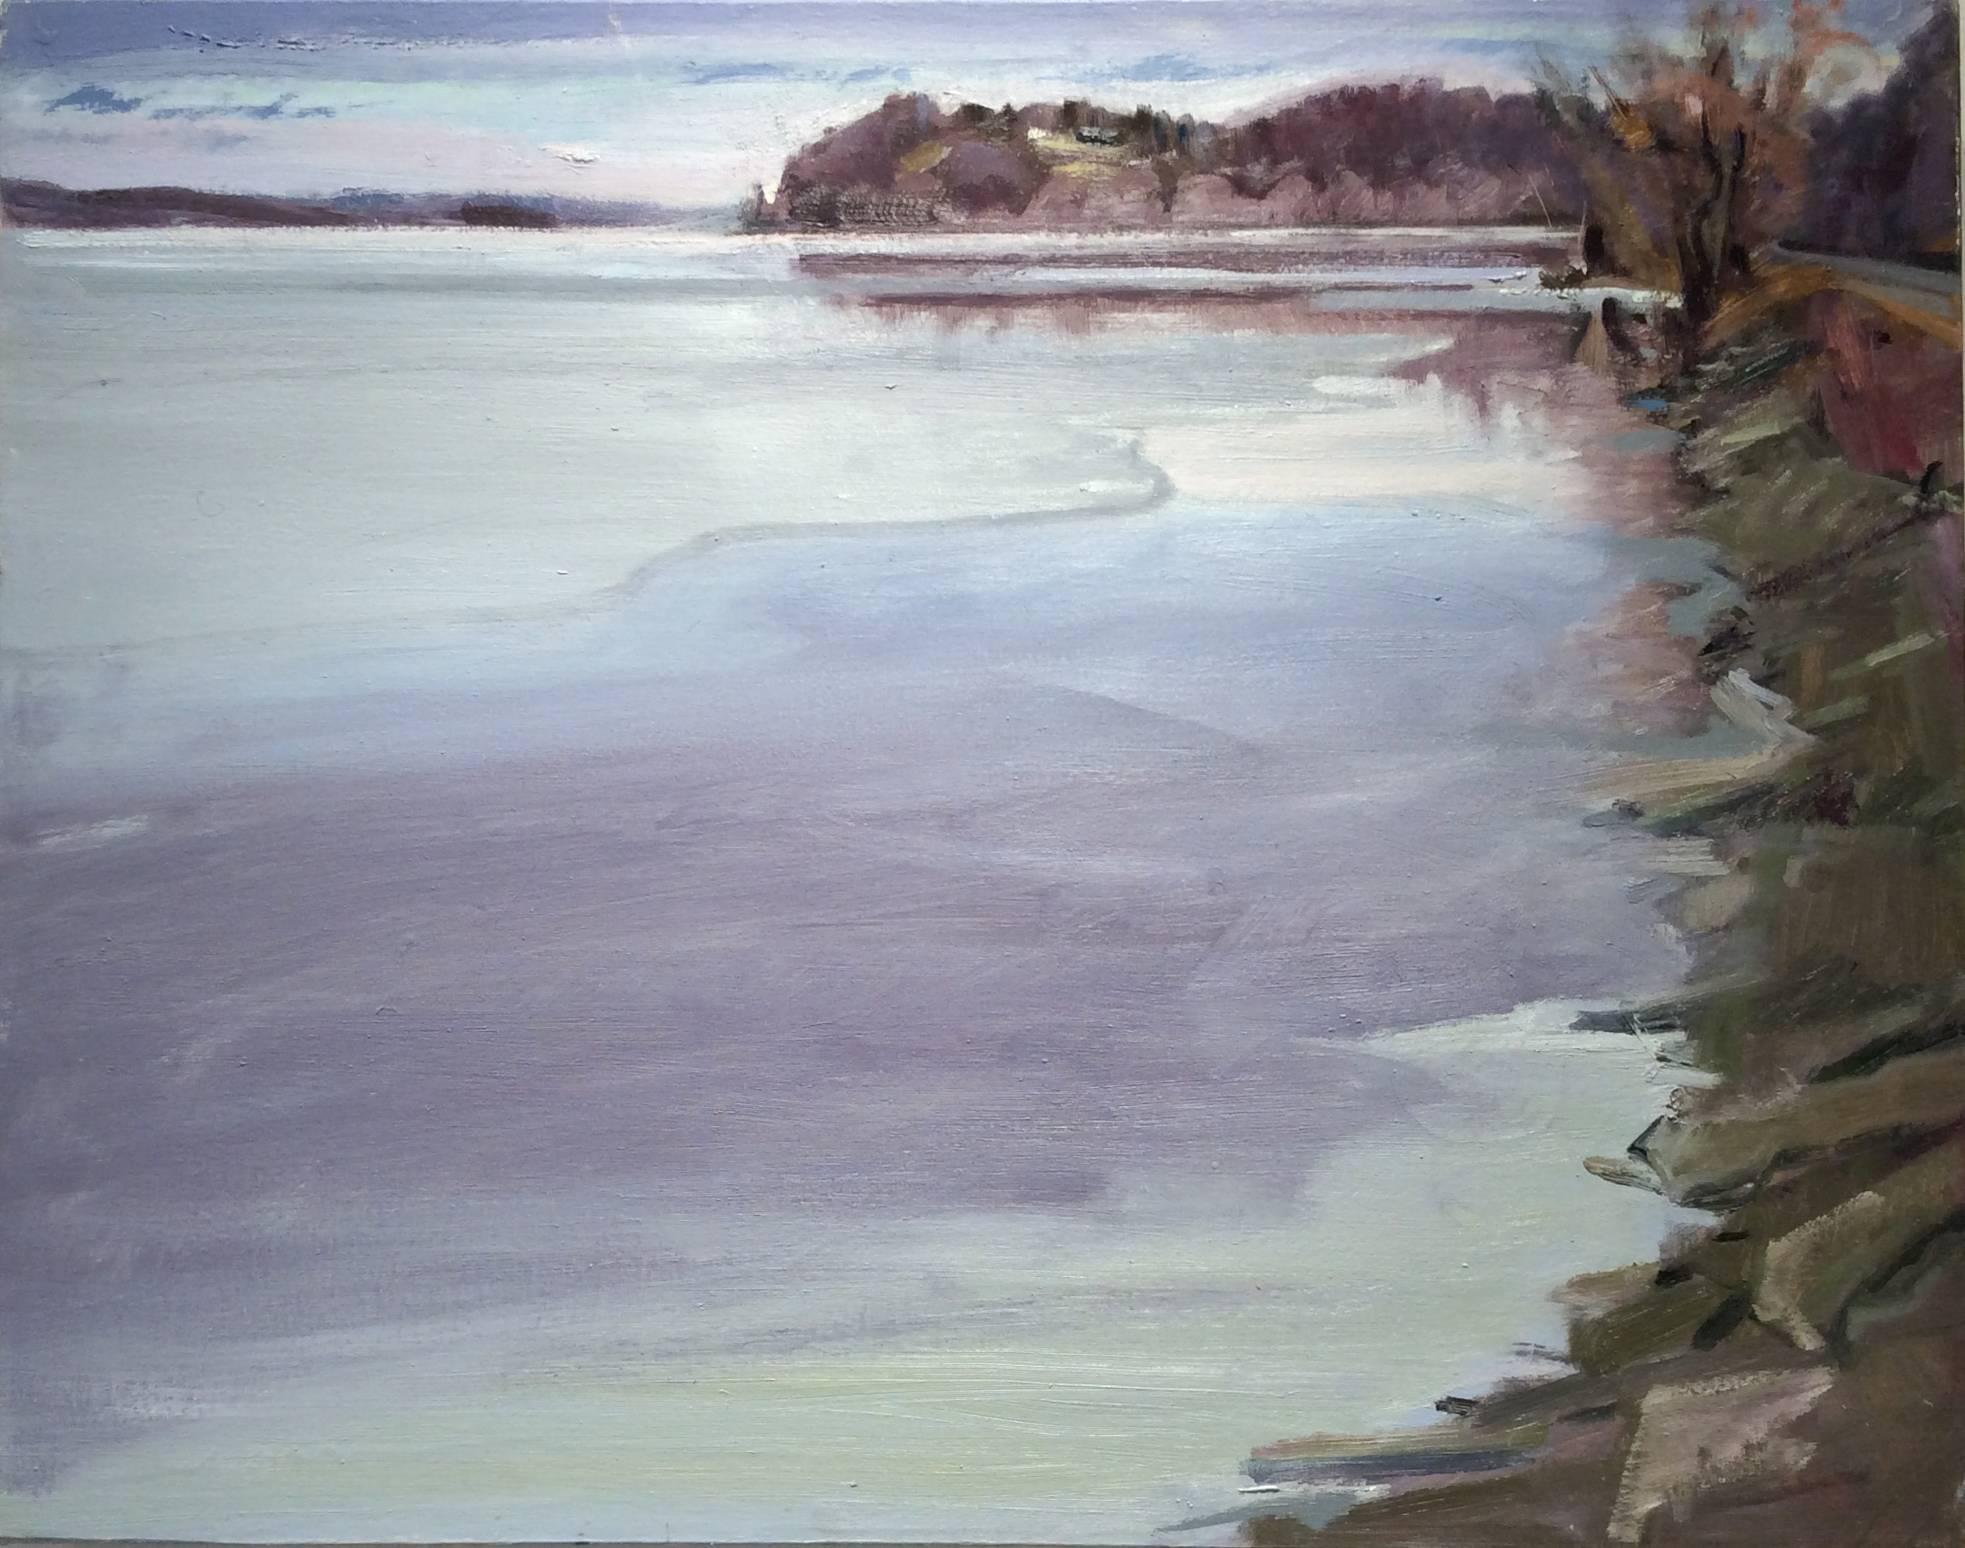 John Kelly Landscape Painting – Cheviot in Winter (Winterlandschaftsgemälde einer Grafschaft mit Hudson River im Winter)